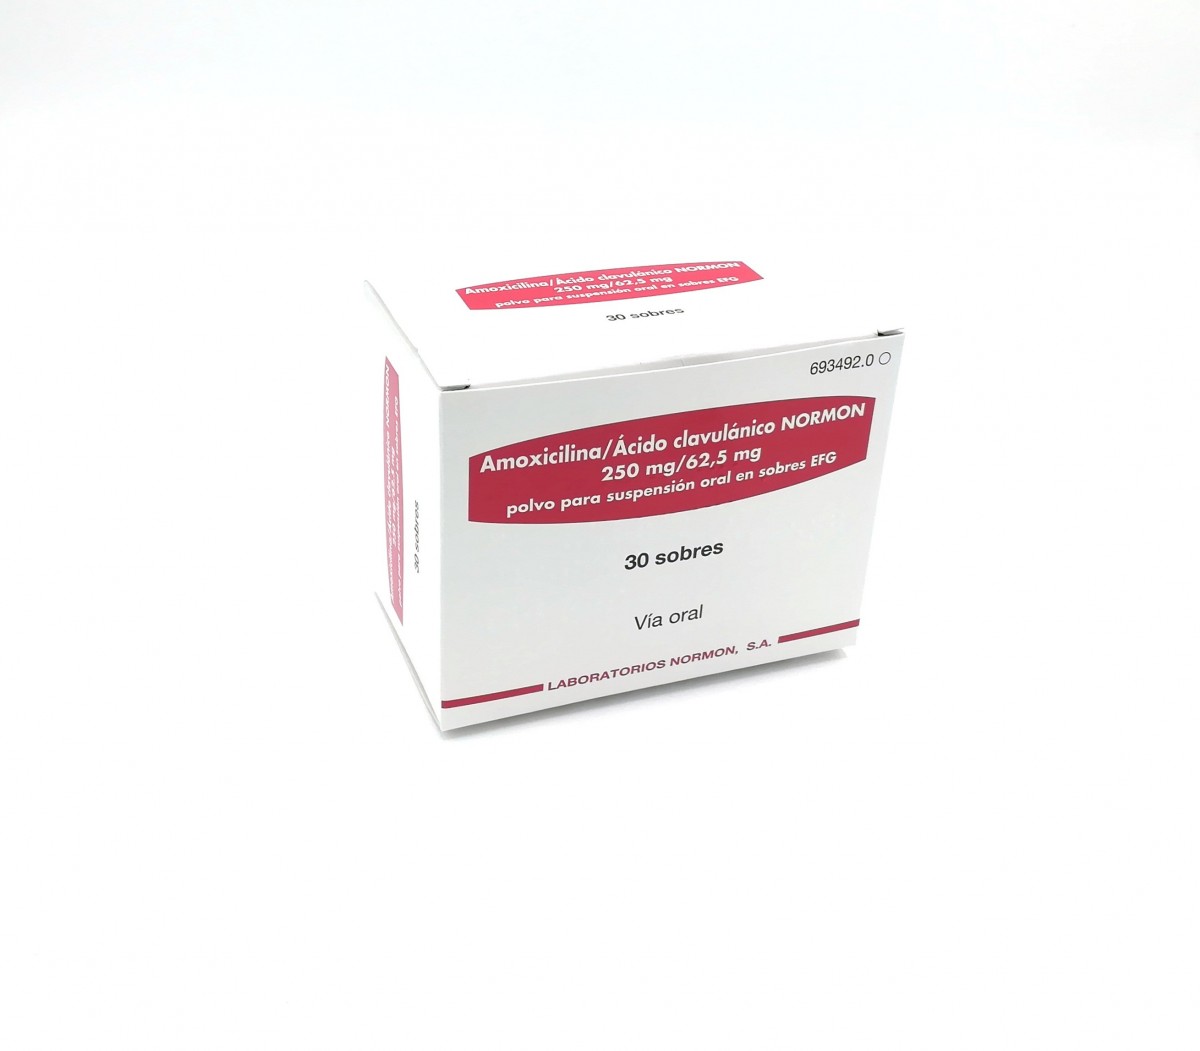 AMOXICILINA/ACIDO CLAVULANICO NORMON 250 mg/62,5 mg  POLVO PARA SUSPENSION ORAL EN SOBRES EFG, 12 sobres fotografía del envase.